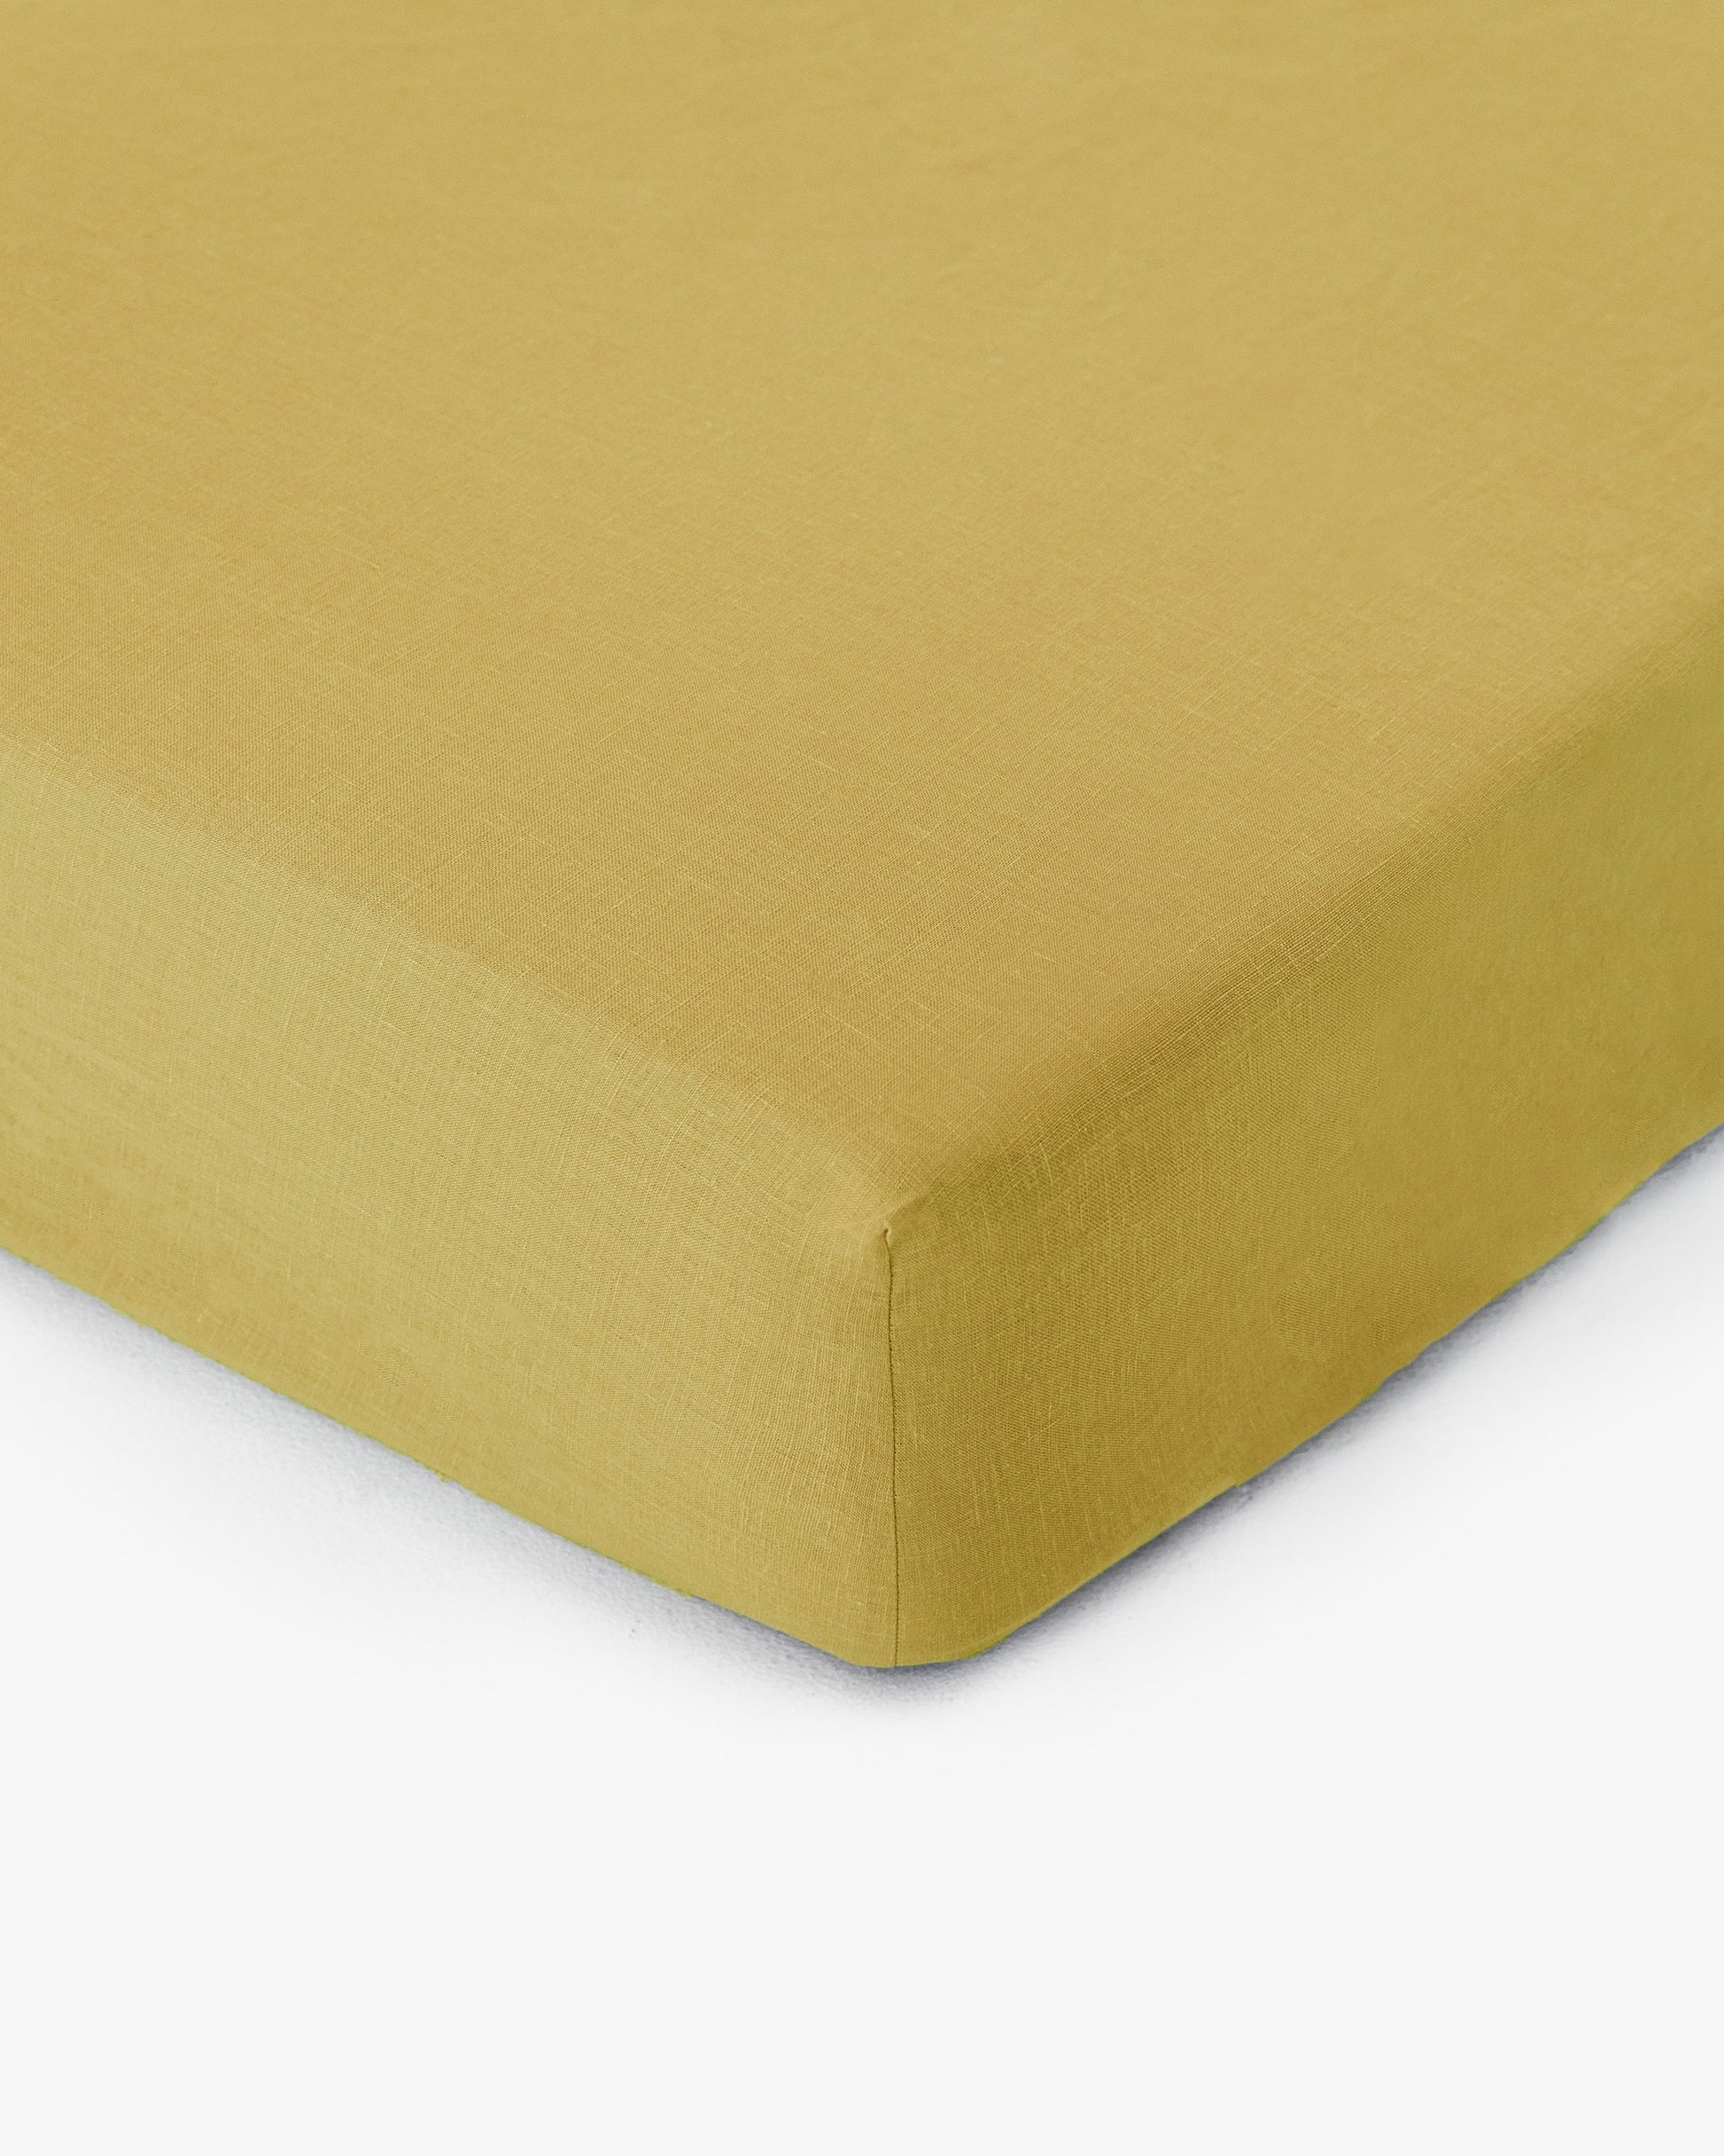 Moss yellow linen fitted sheet - MagicLinen